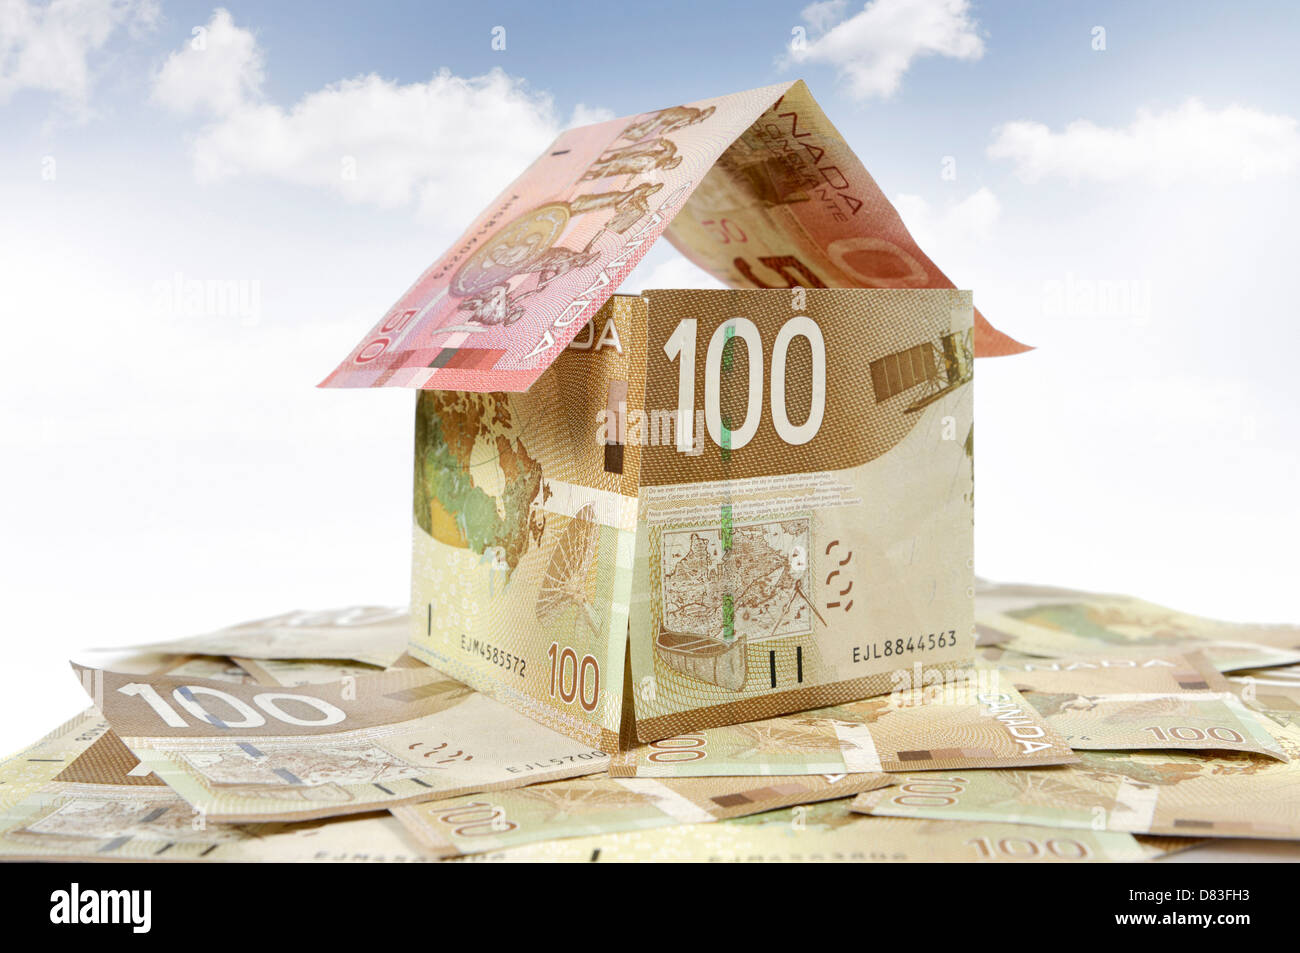 Modell eines Hauses hergestellt aus kanadischer Dollar Rechnungen Closeup Hypothek als Finanzinvestition gehaltenen Immobilien Versicherung Grundsteuer Banking-Konzept Stockfoto